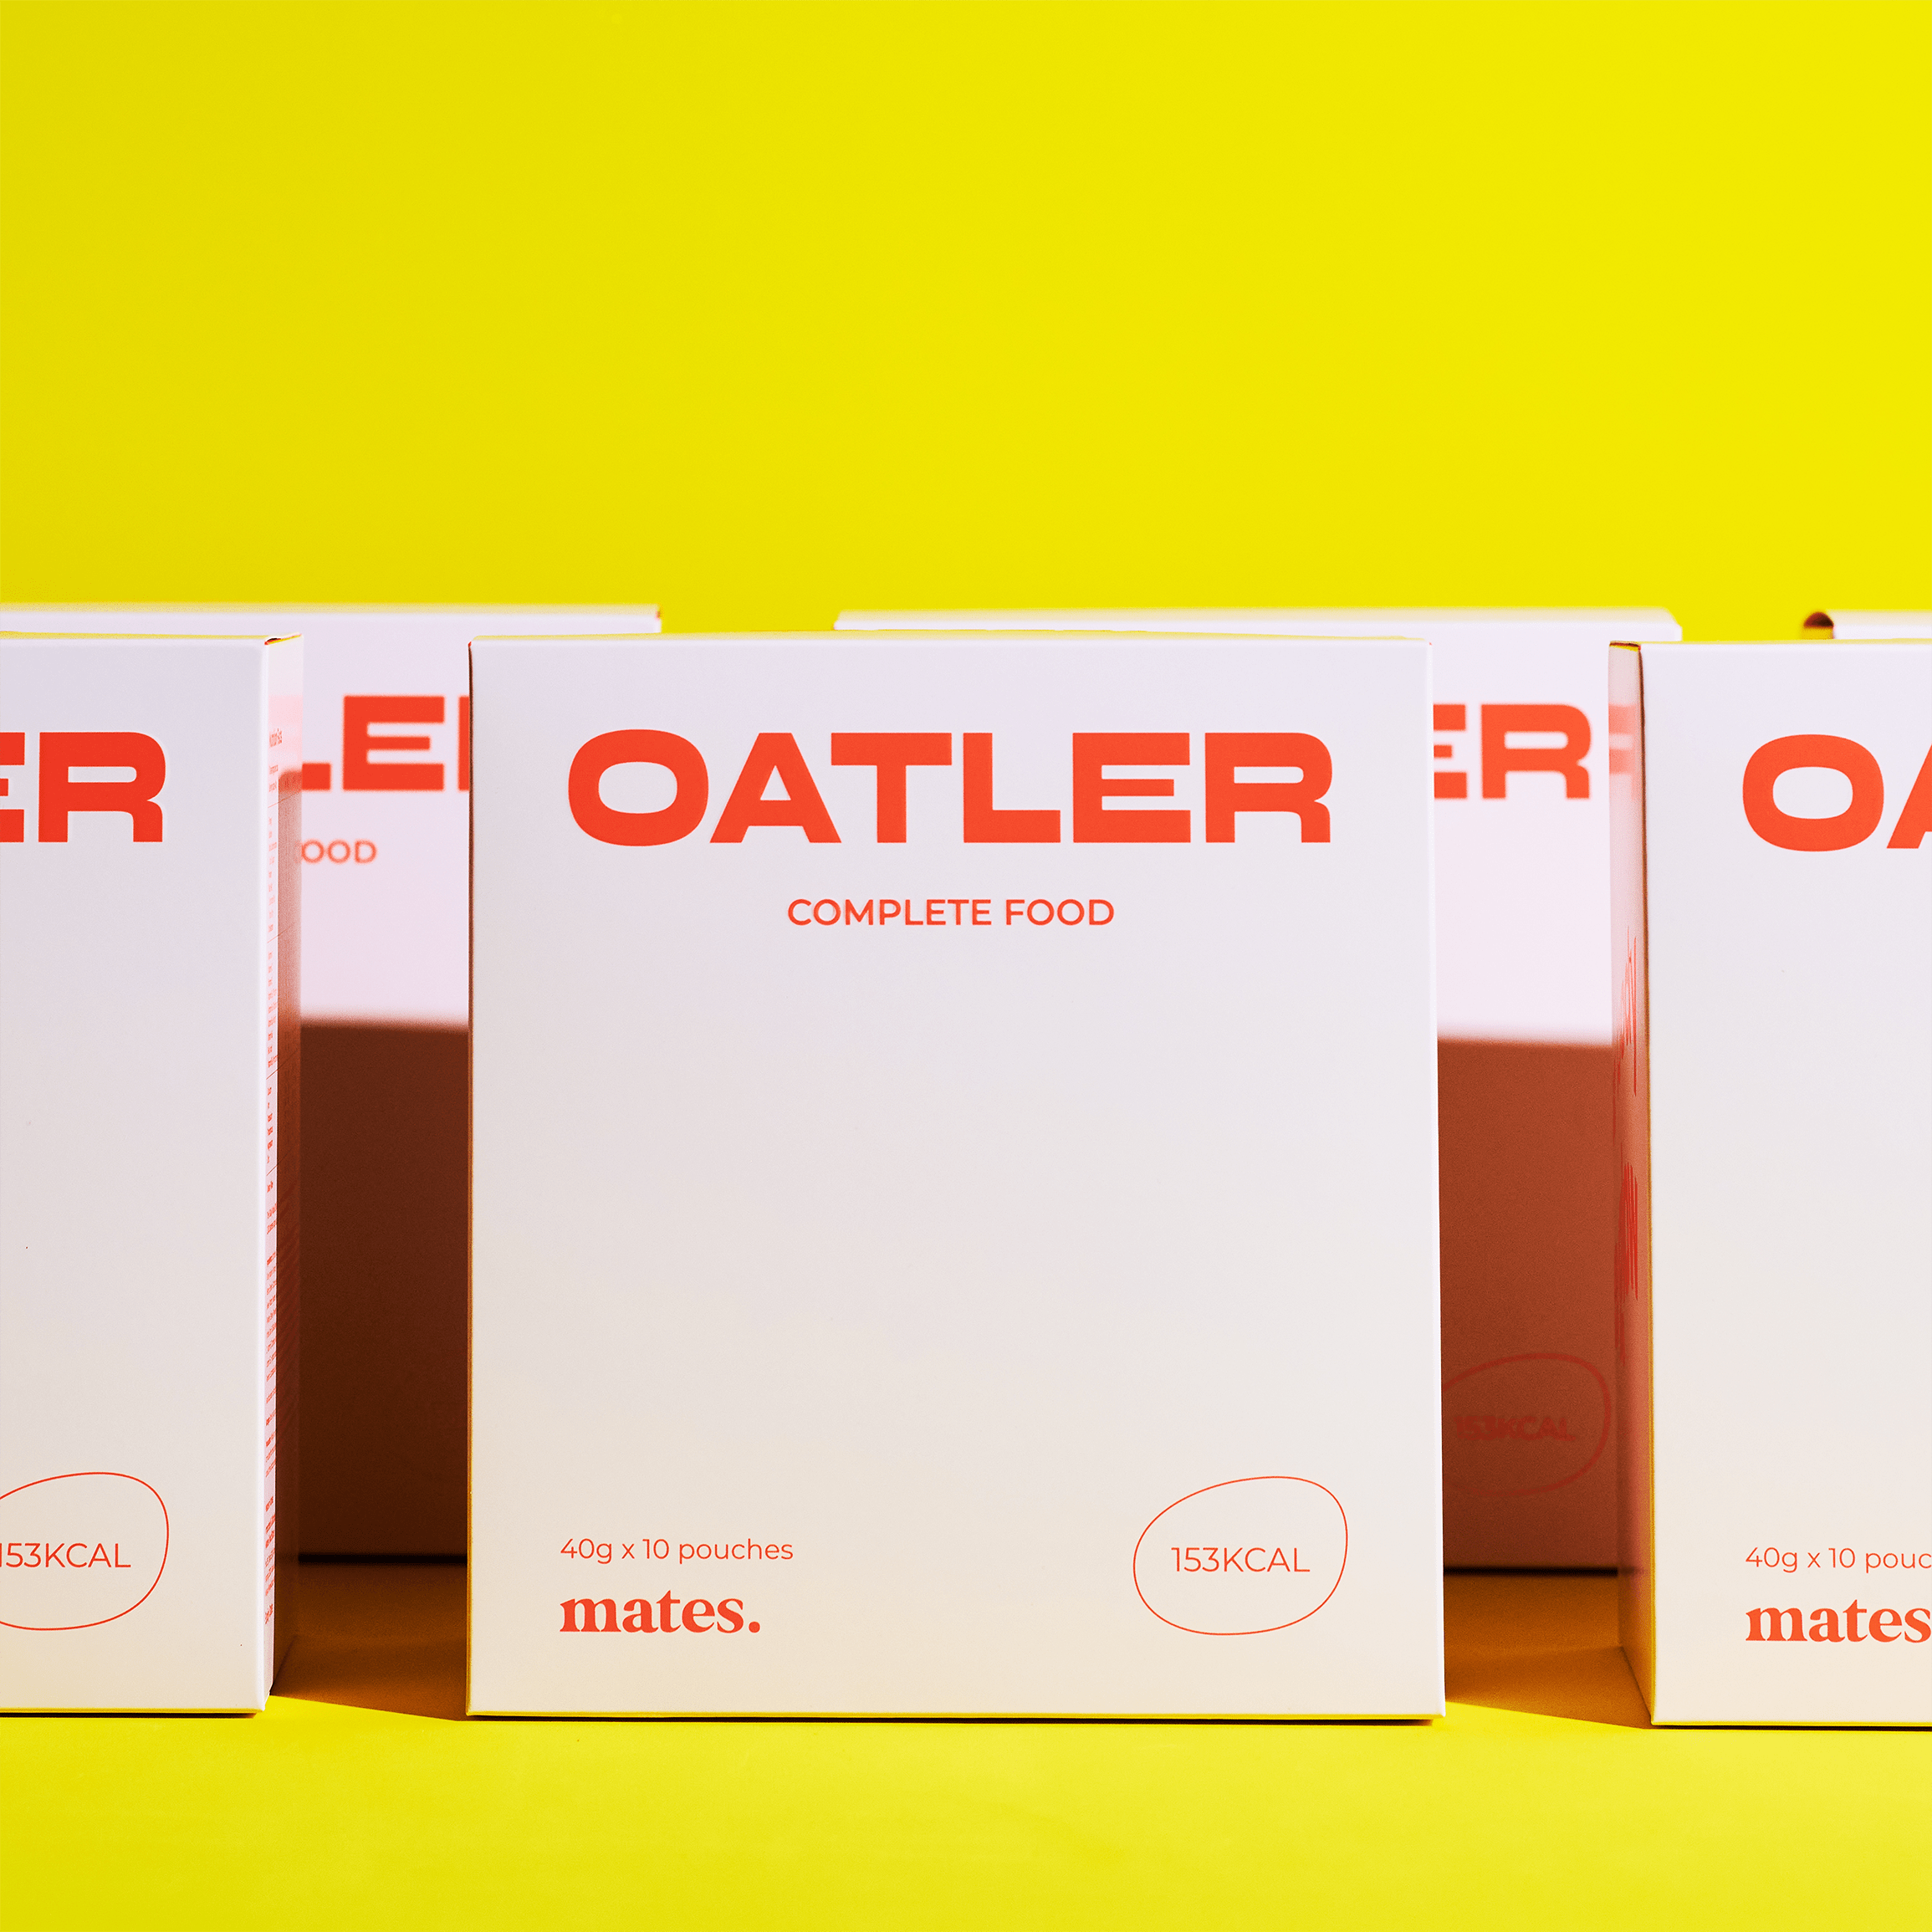 Oatler - Complete Food